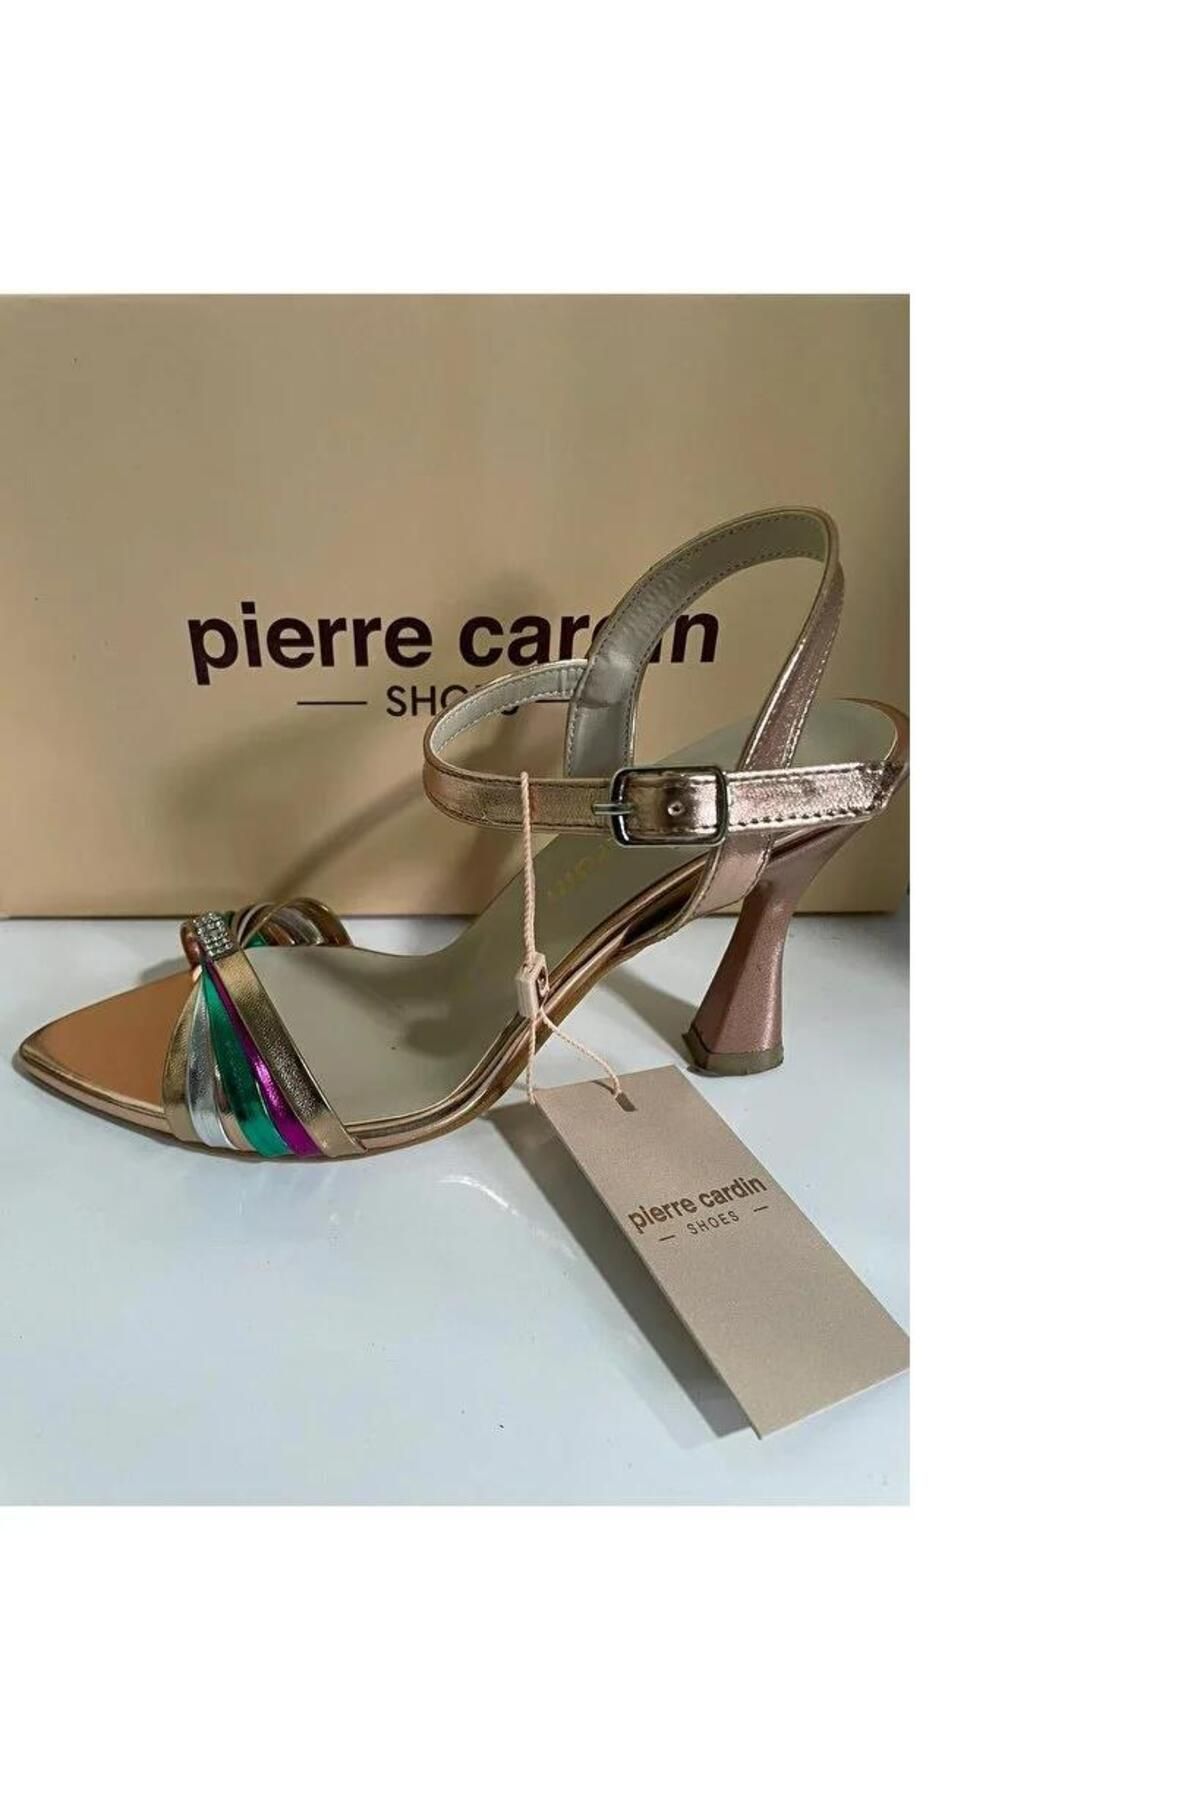 Pierre Cardin PİERRE CARDİN 53070 Taş Detaylı Kısa Kalın Rahat Topuk Renkli Topuklu Ayakkabı